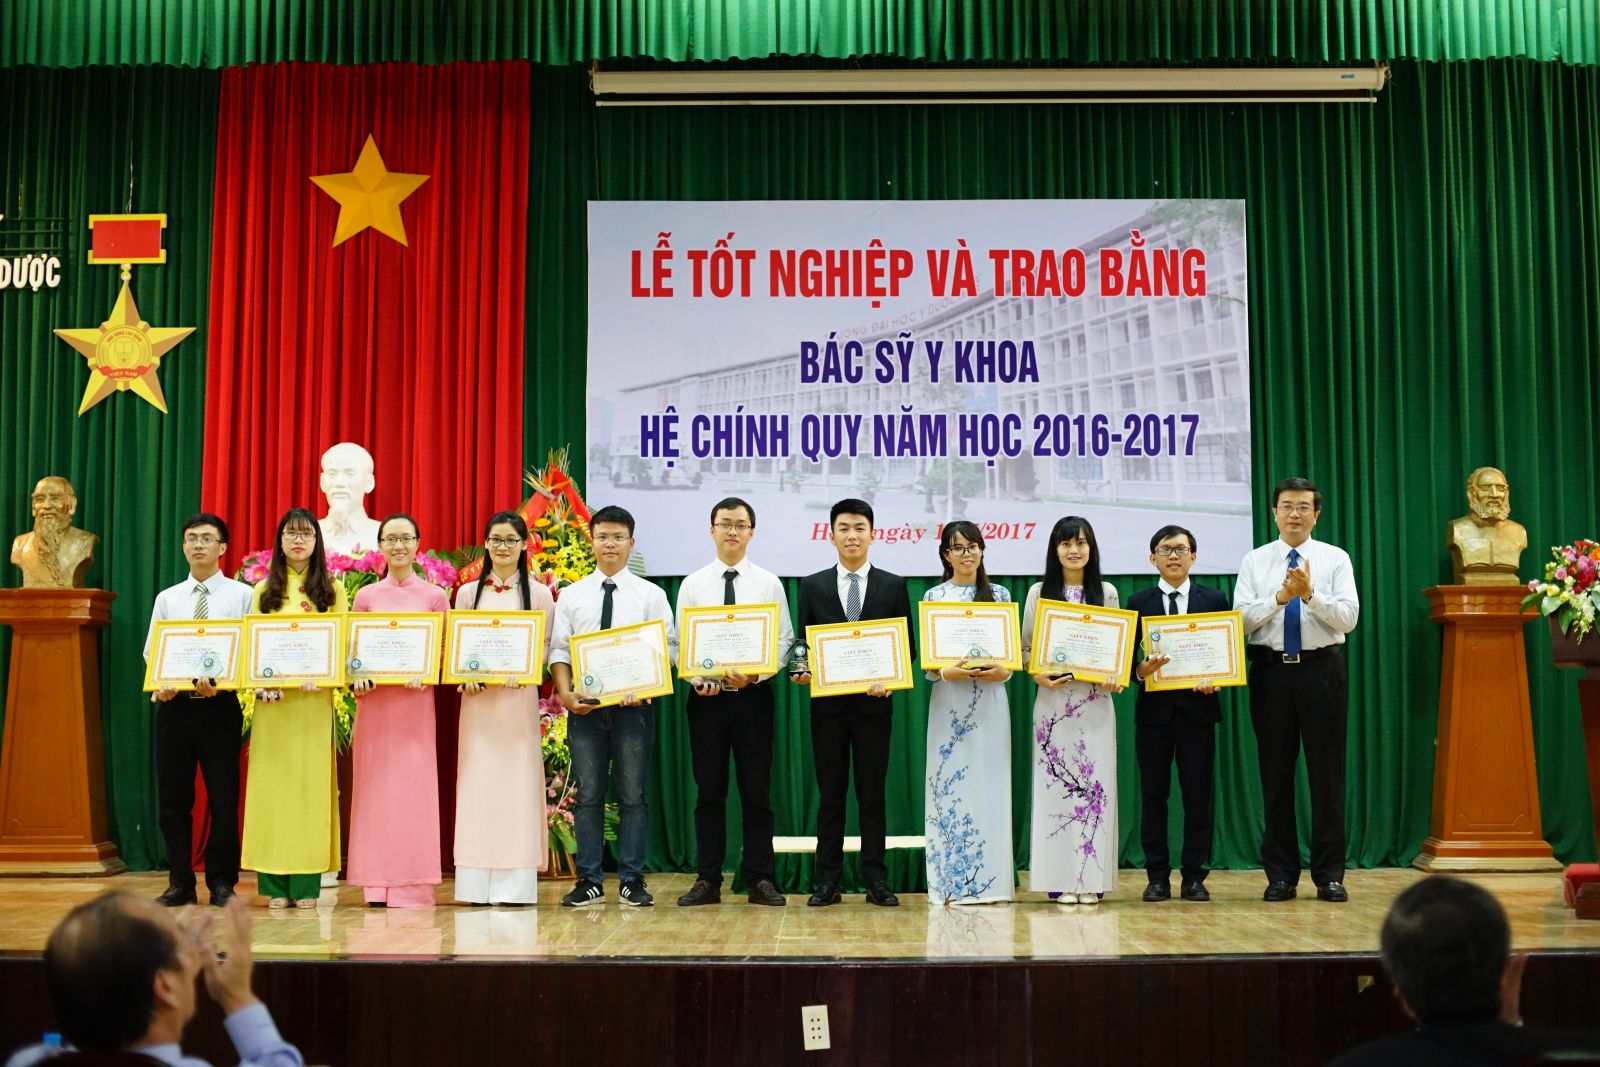 PGS.TS. Nguyễn Vũ Quốc Huy, Phó Hiệu trưởng trao tặng Giấy khen cho những sinh viên đạt kết quả học tập xuất sắc/giỏi, rèn luyện xuất sắc/tốt và tích cực tham gia các công tác của Nhà trường trong toàn khóa học.